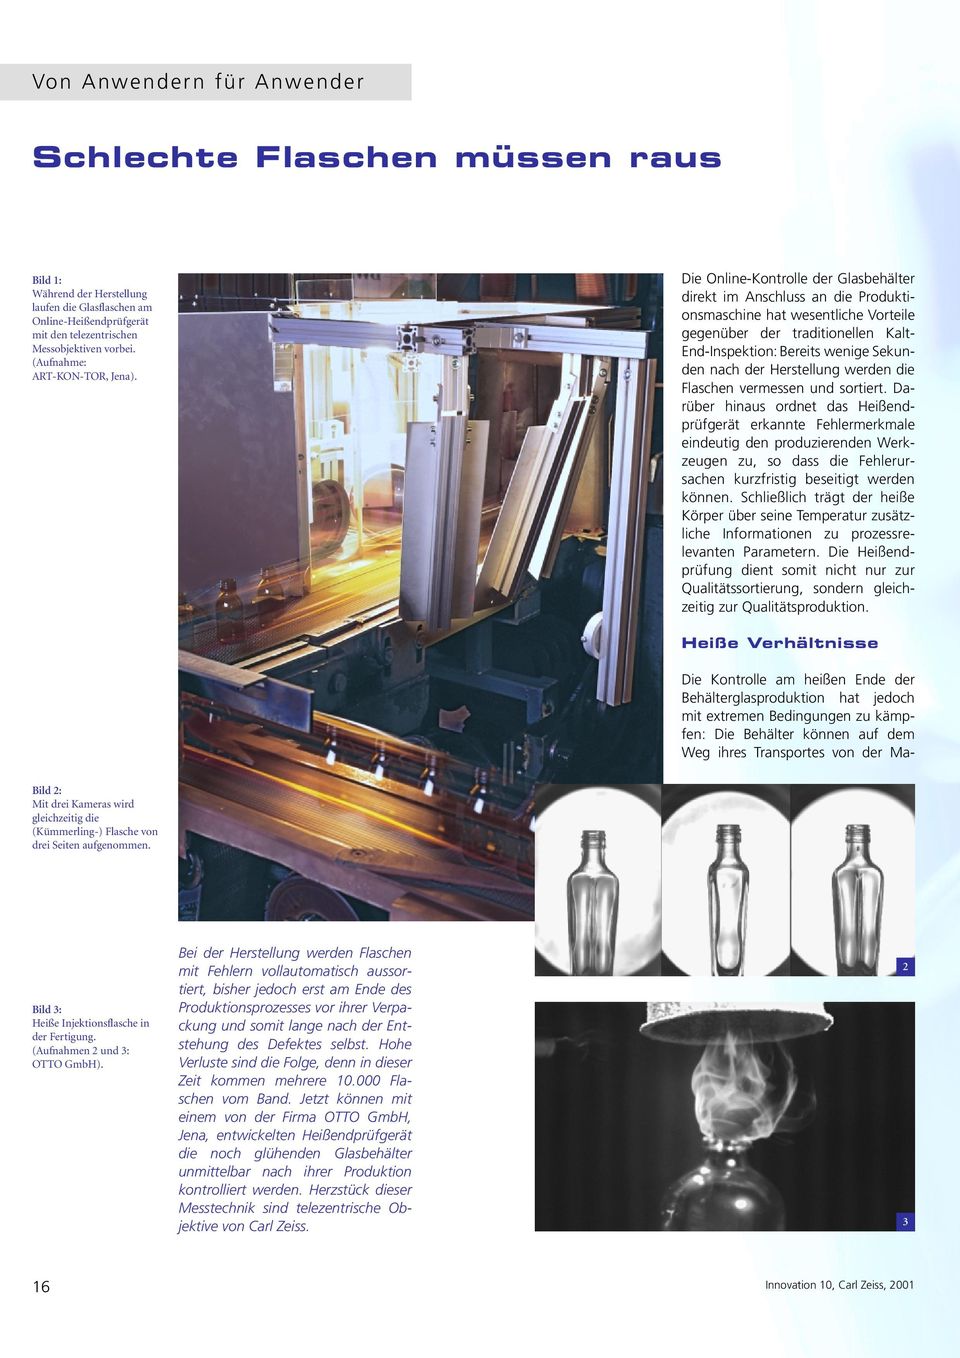 Die Online-Kontrolle der Glasbehälter direkt im Anschluss an die Produktionsmaschine hat wesentliche Vorteile gegenüber der traditionellen Kalt- End-Inspektion: Bereits wenige Sekunden nach der